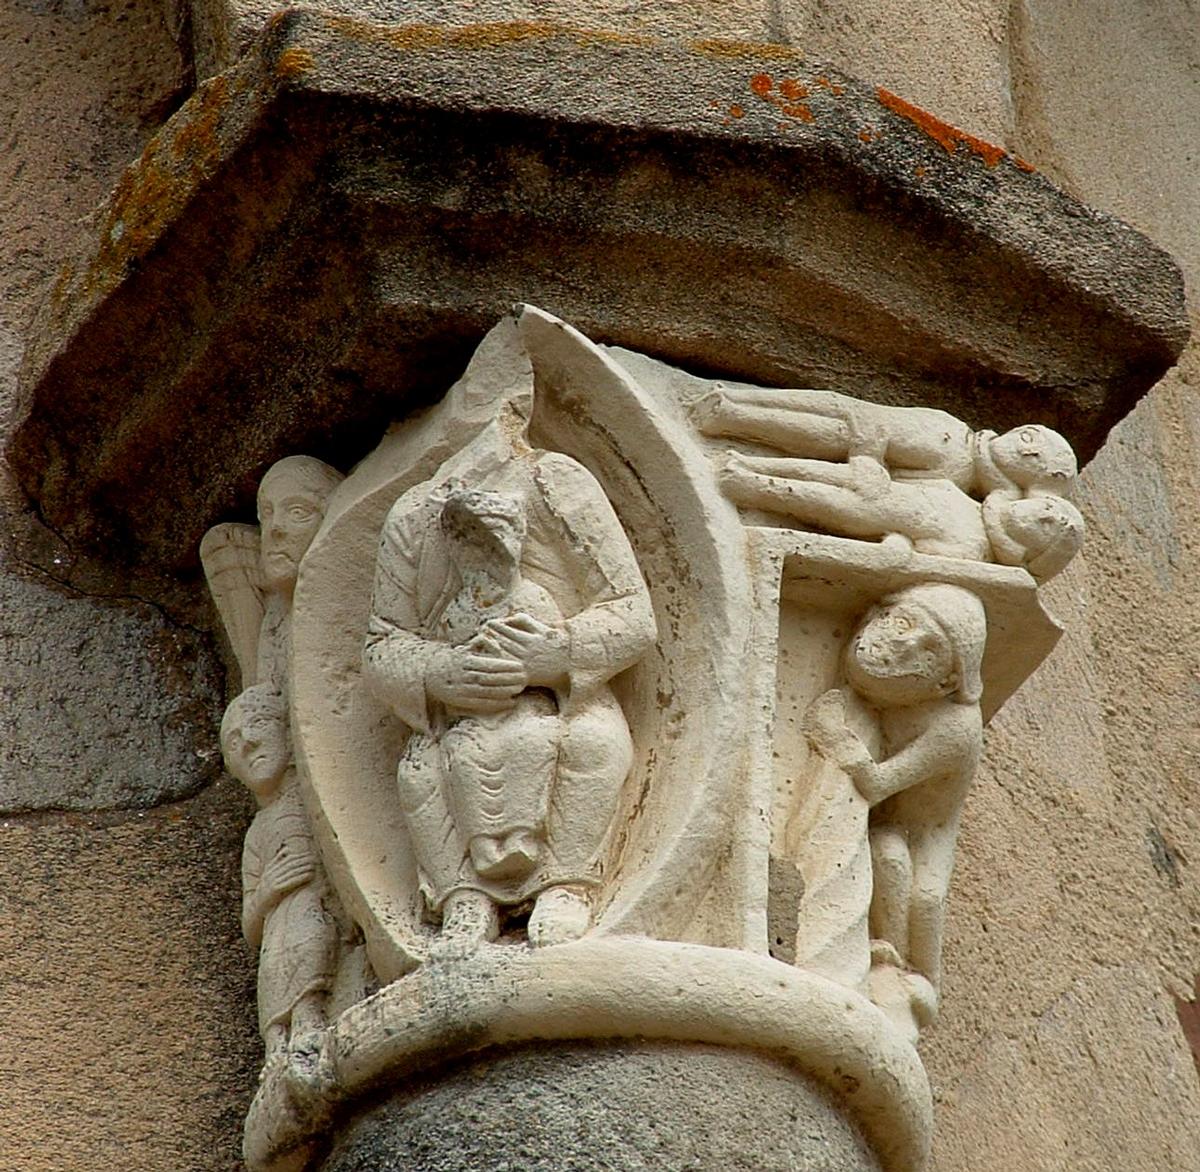 Ehemalige Abtei Saint-Pierre in Vigeois 